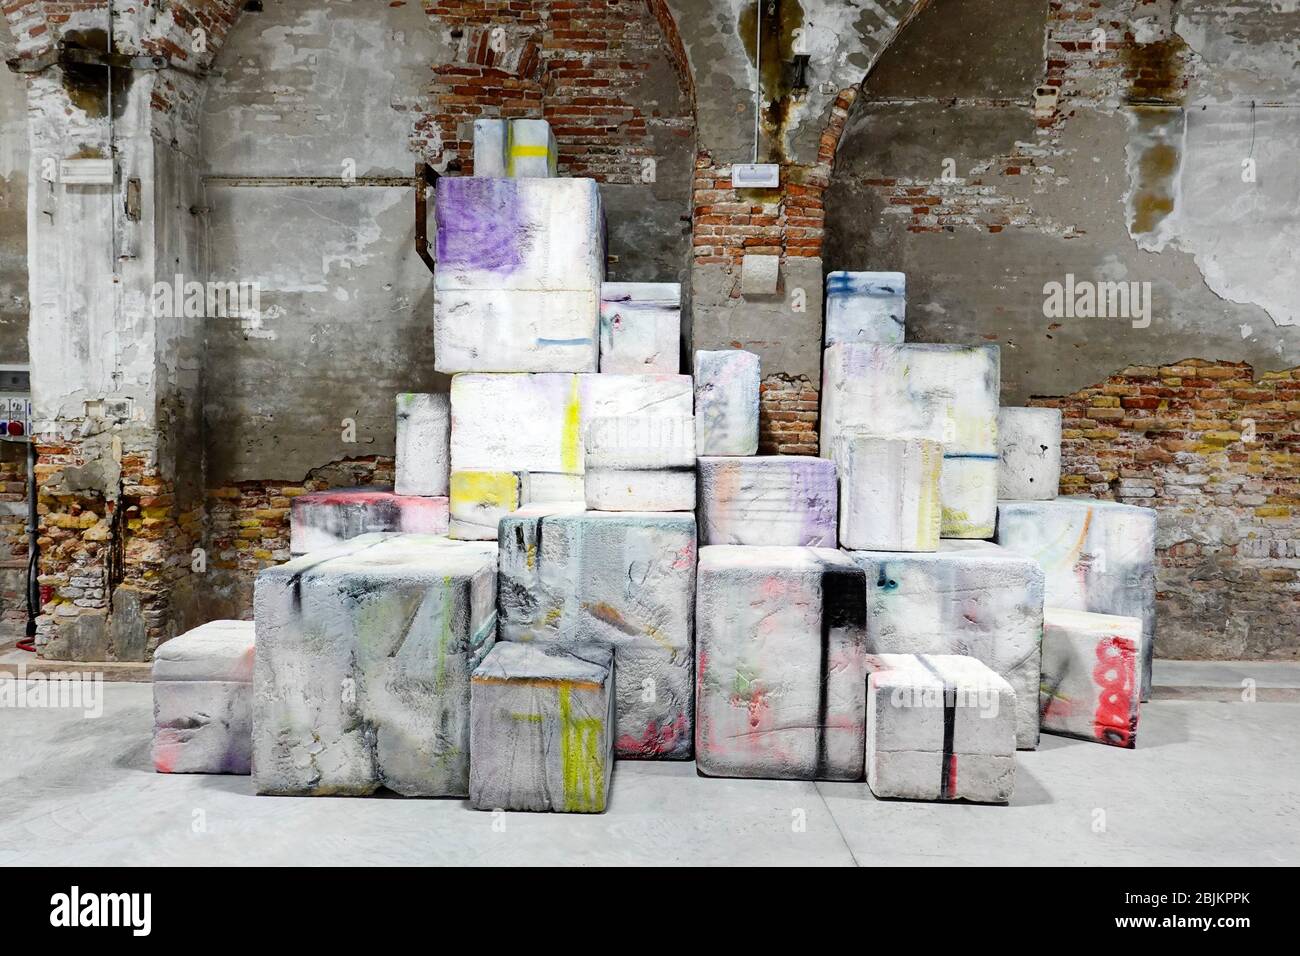 Amphi, installation artistique par Eva Rothschild, artiste irlandaise, à l'Arsenale, Biennale, Venise, Italie. Banque D'Images